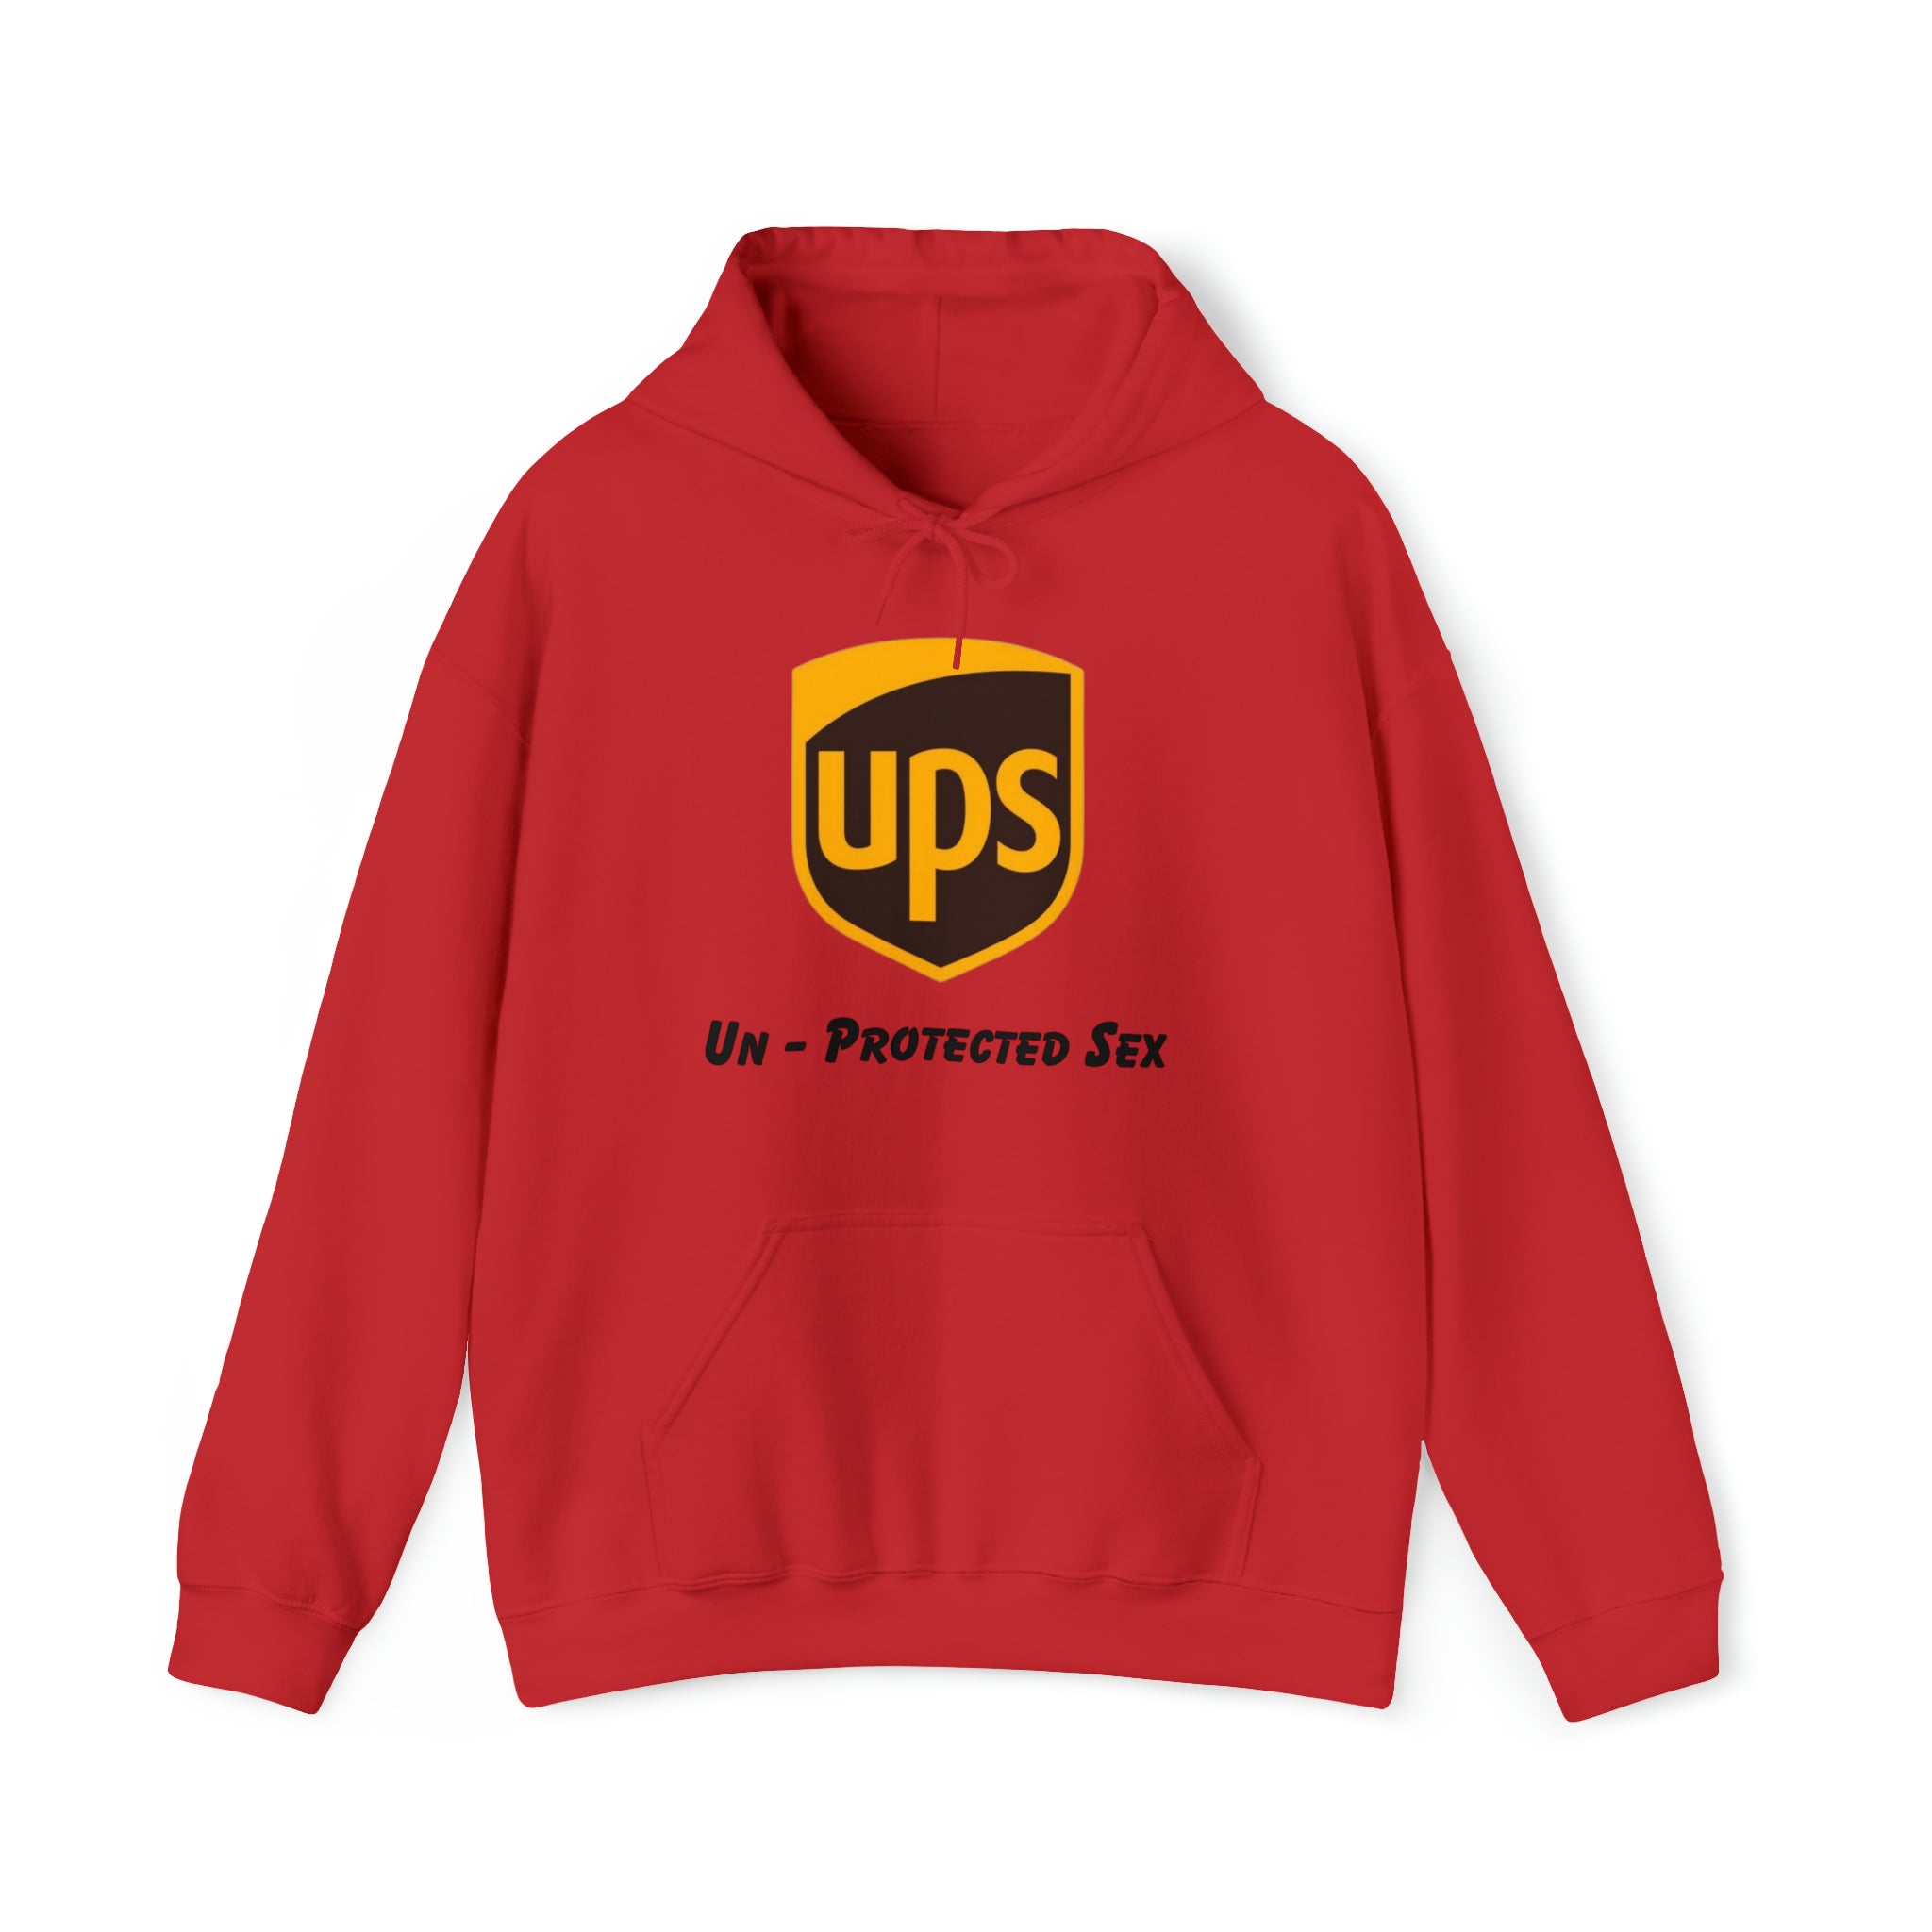 UPS (Un-Protected Sex)